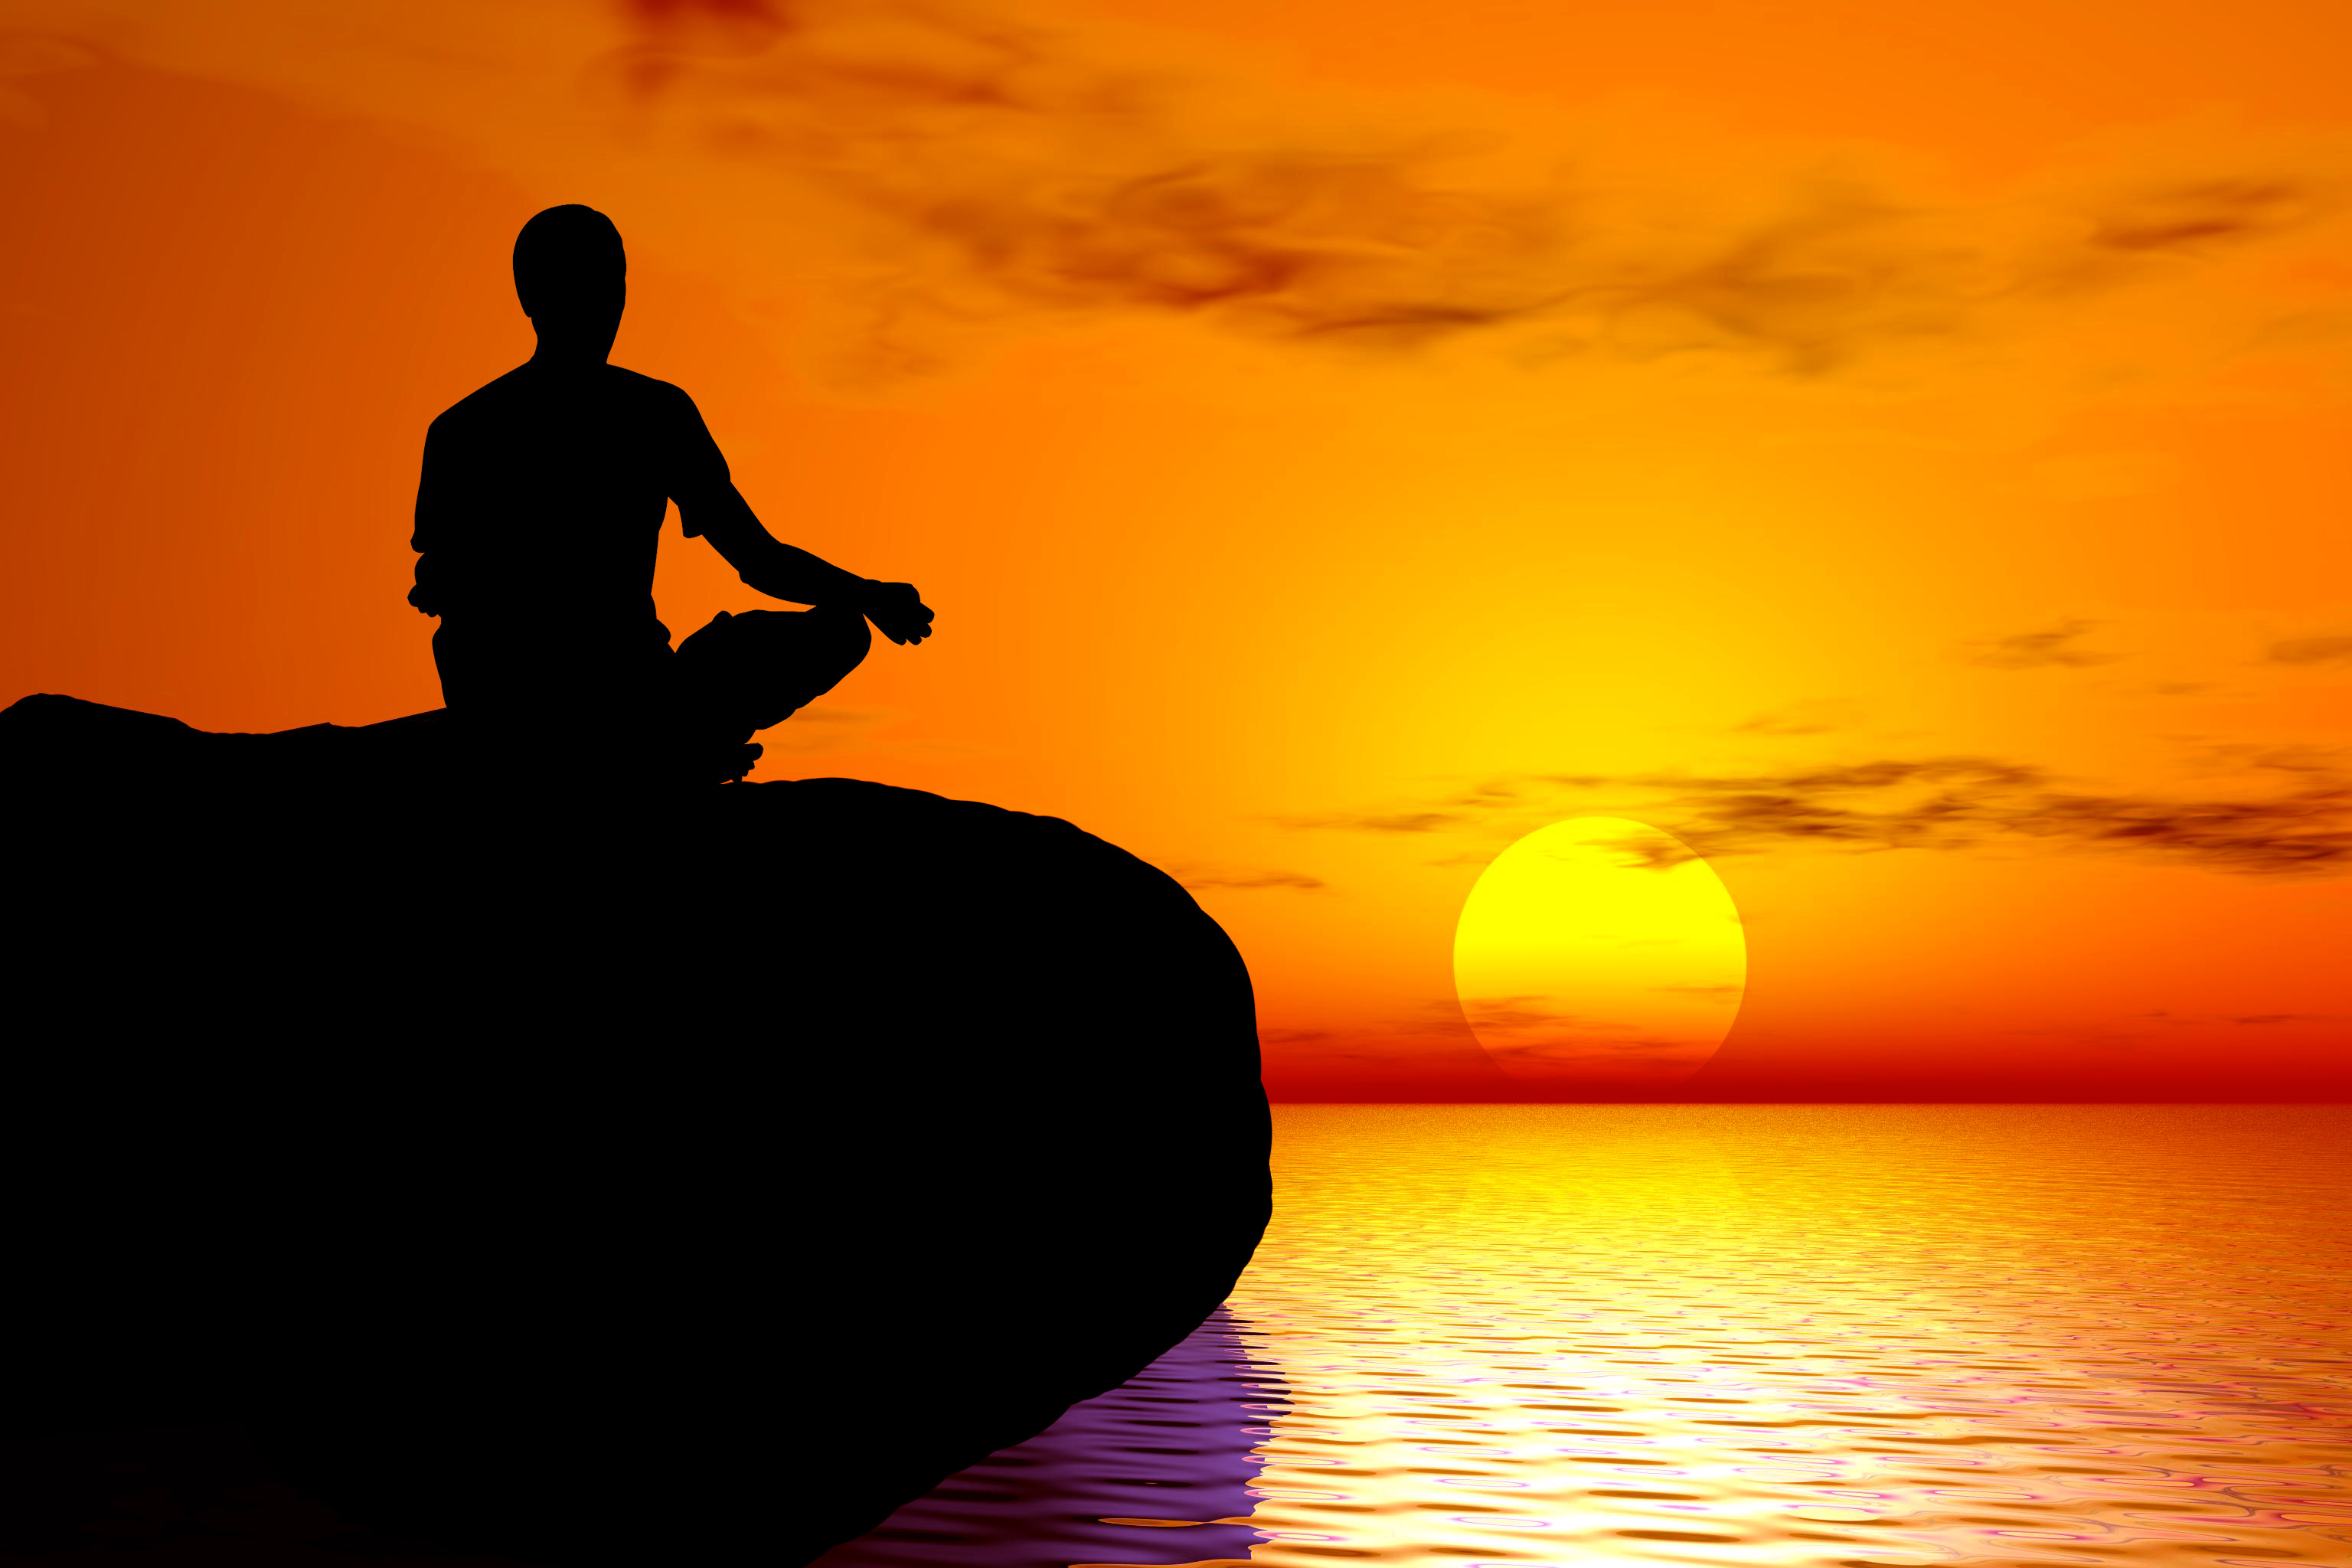 Медитация спокойствие. Духовное спокойствие. Человек на закате. Душевное спокойствие и Гармония. Размышляя о цели